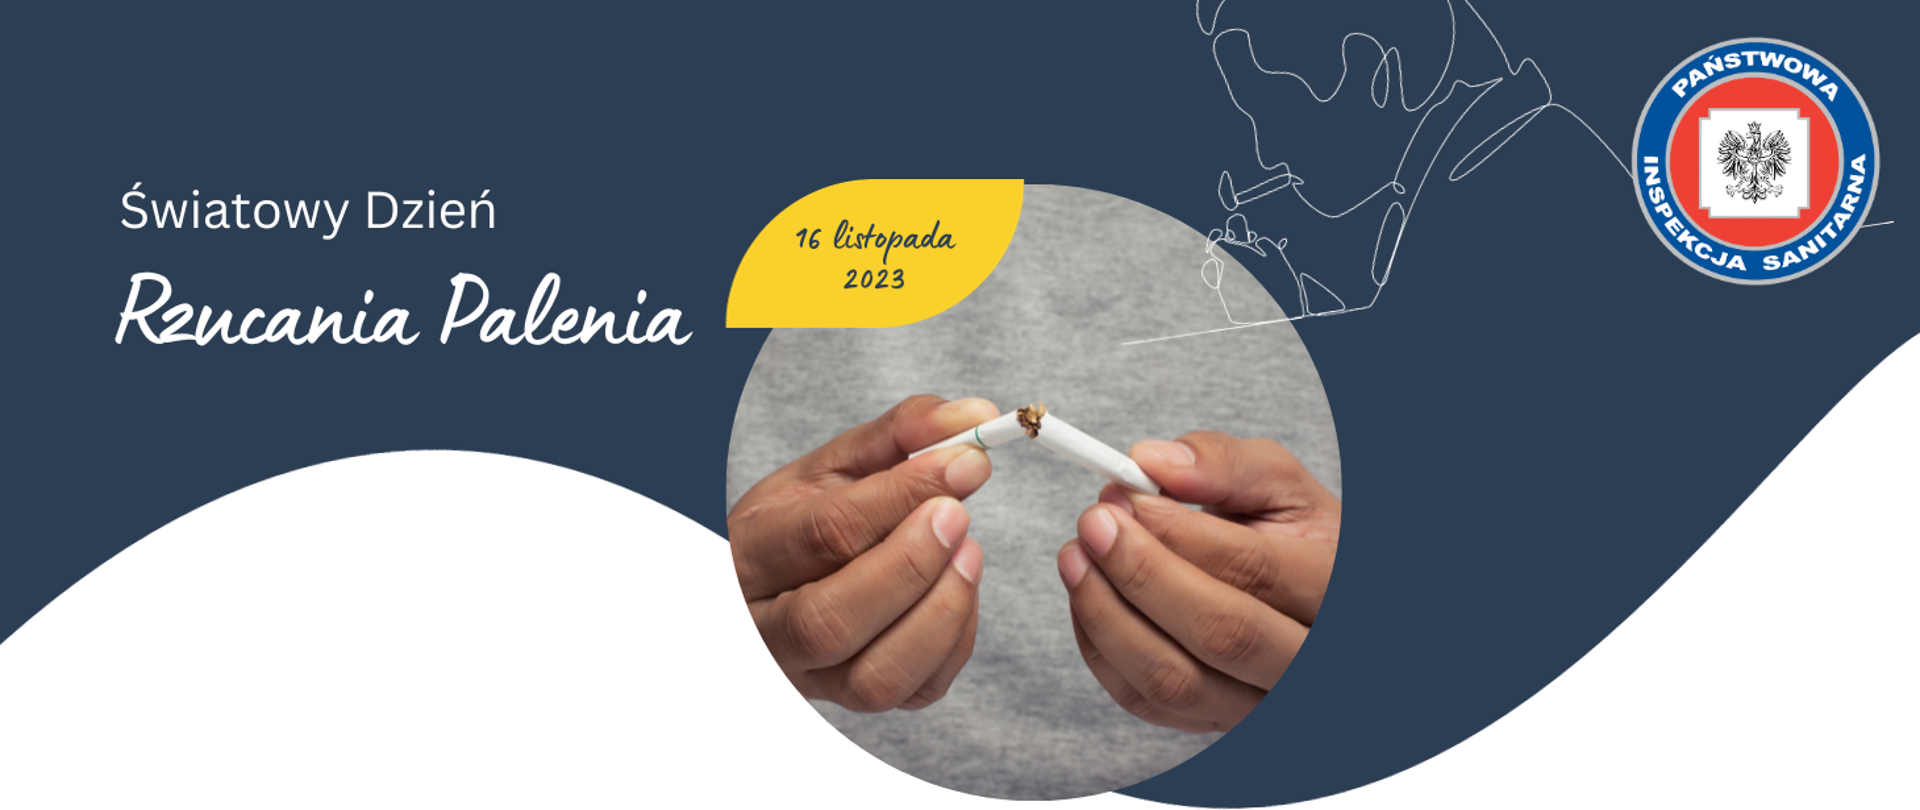 Grafika z tekstem: Światowy Dzień Rzucania Palenia 16 listopada 2023 Zdjęcie złamanego papierosa